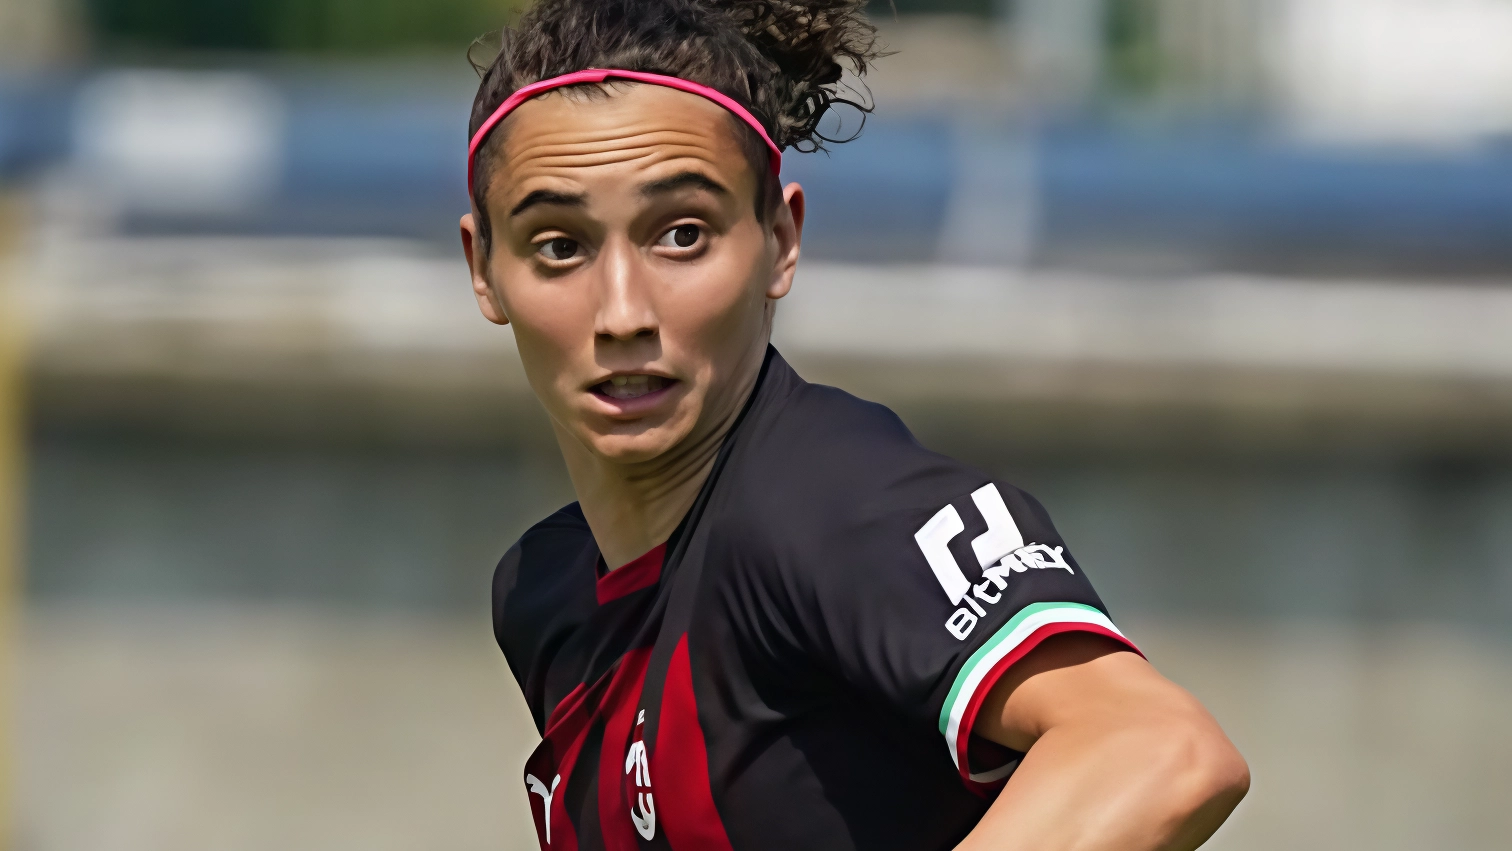 Il Milan cerca la terza vittoria consecutiva contro il Napoli. Angelica Soffia prolunga il contratto fino al 2027 e si dice orgogliosa della fiducia del club. Le cugine nerazzurre perdono contro il Sassuolo nella poule scudetto.